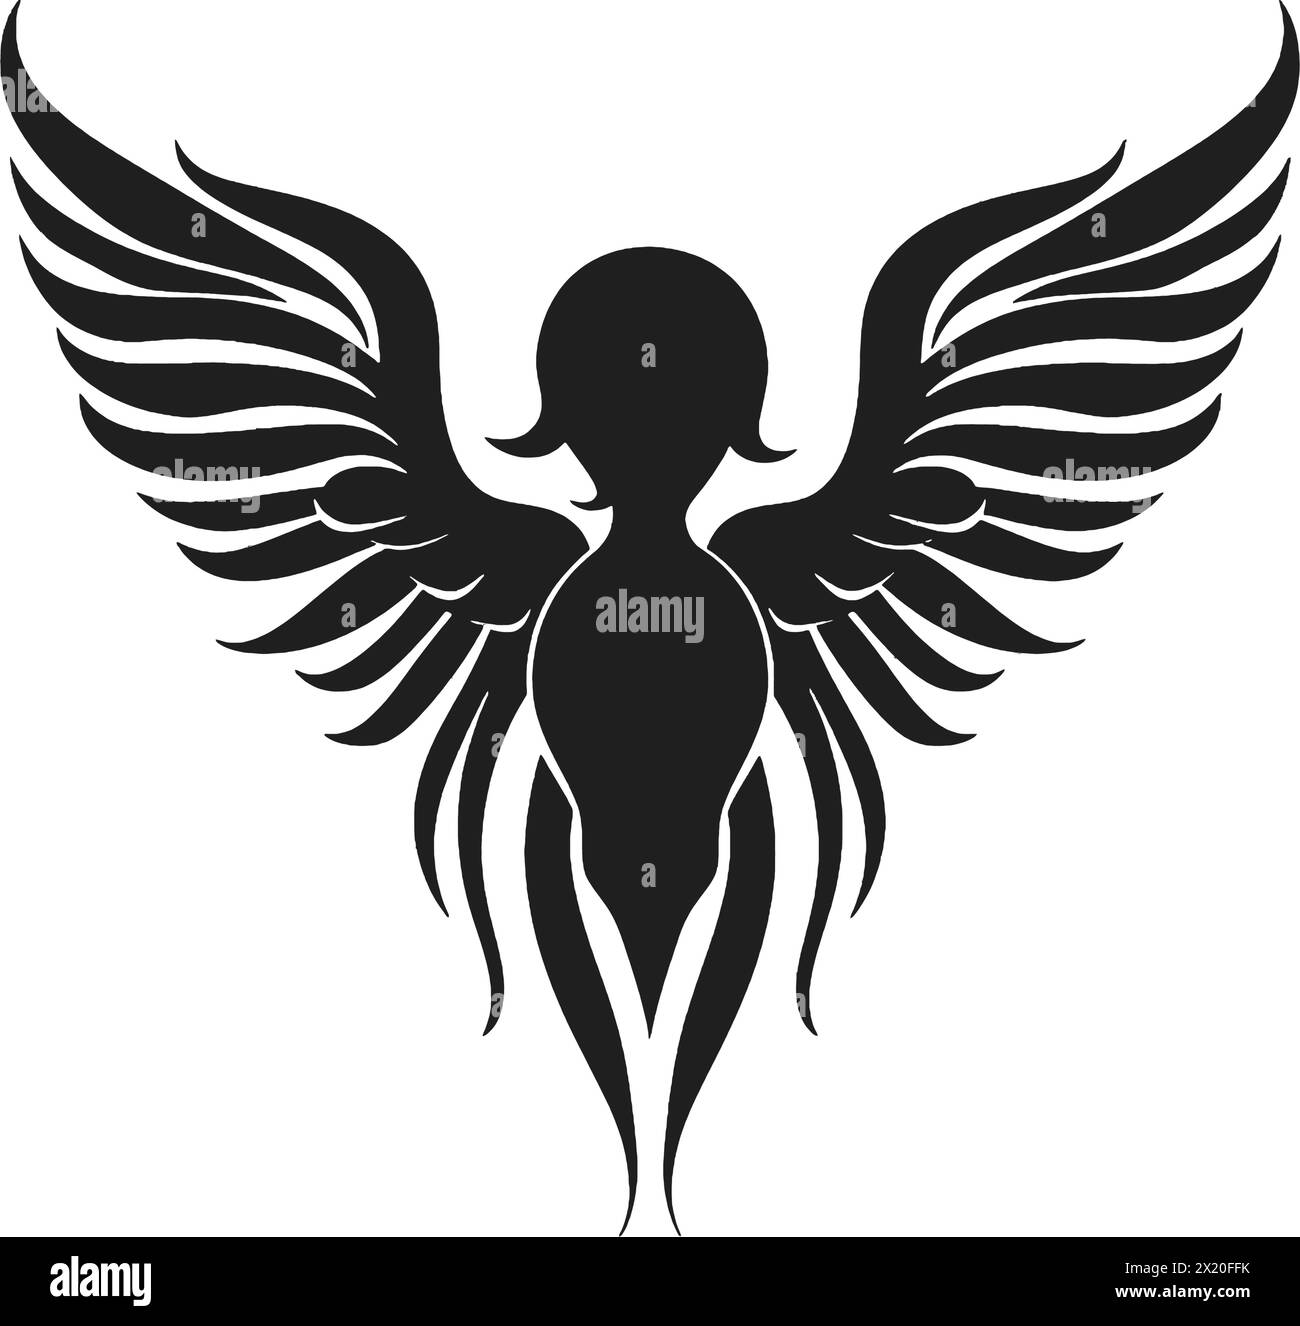 Illustration vectorielle d'un tatouage d'ange en silhouette noire sur un fond blanc propre, capturant des formes gracieuses. Illustration de Vecteur